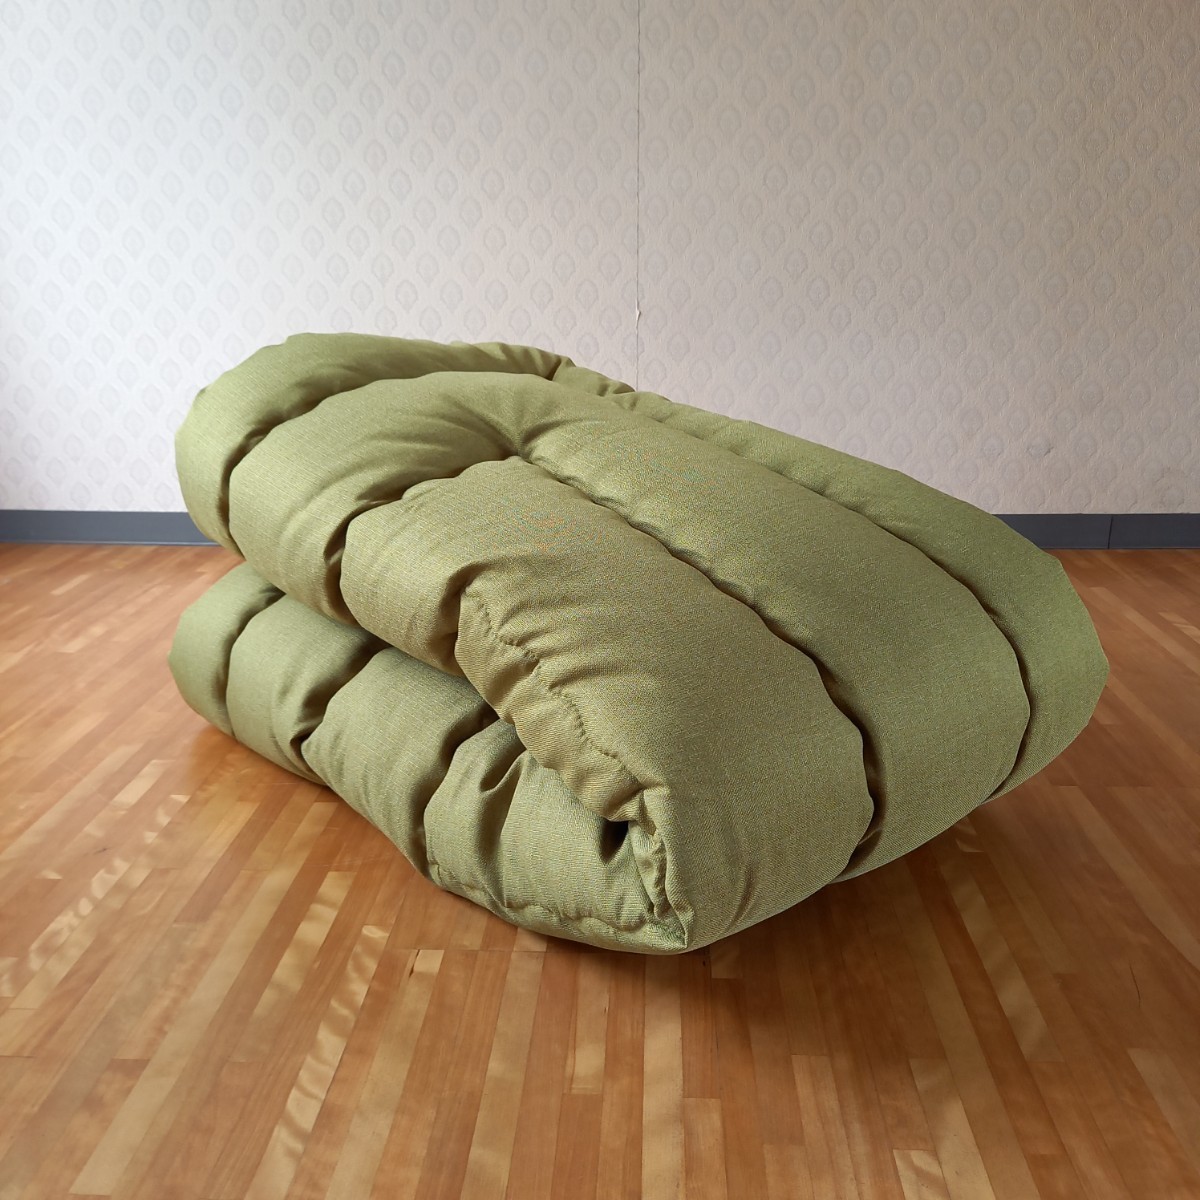  супер водоотталкивающая отделка прямоугольный котацу futon толстый ткань объем толщина .. зеленый котацу чистый безопасность сделано в Японии ( пуховый футон ватное одеяло матрас футон подушка ) выставляется 